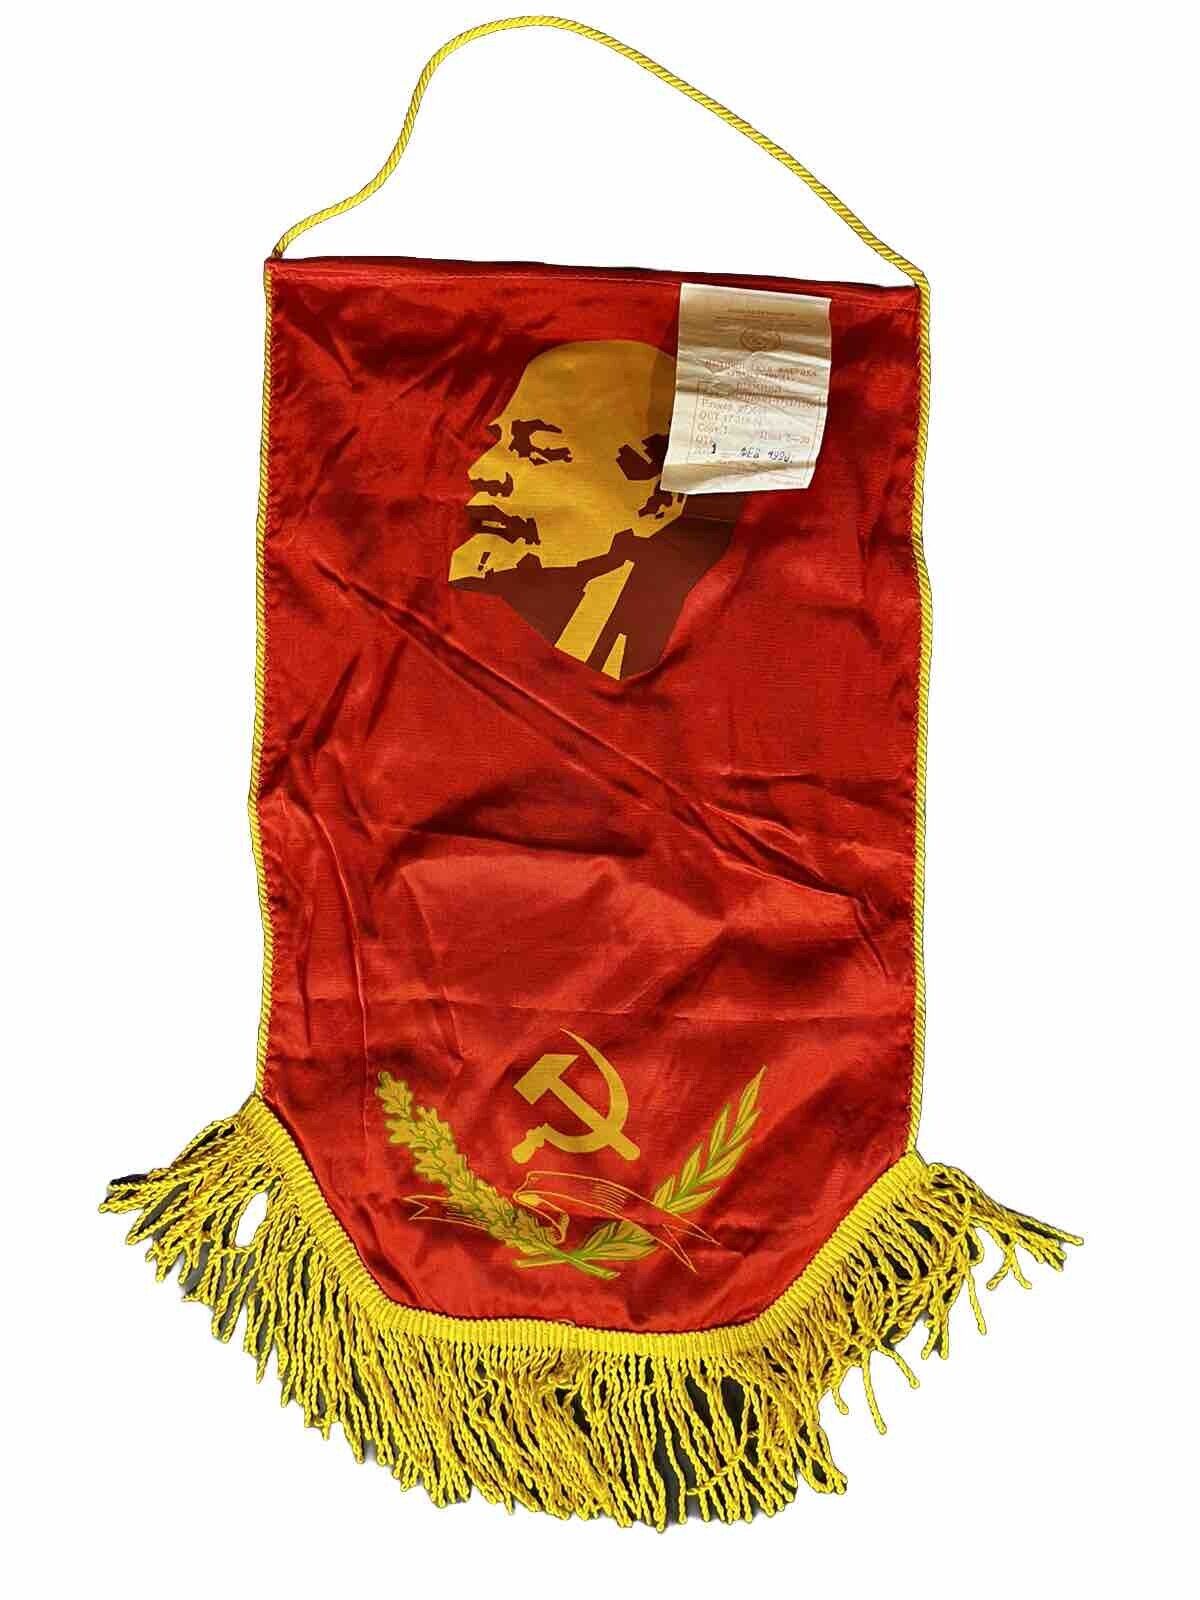 Vintage 1990s USSR Soviet Union Lenin Propaganda Banner/Poster Sickel Cold War